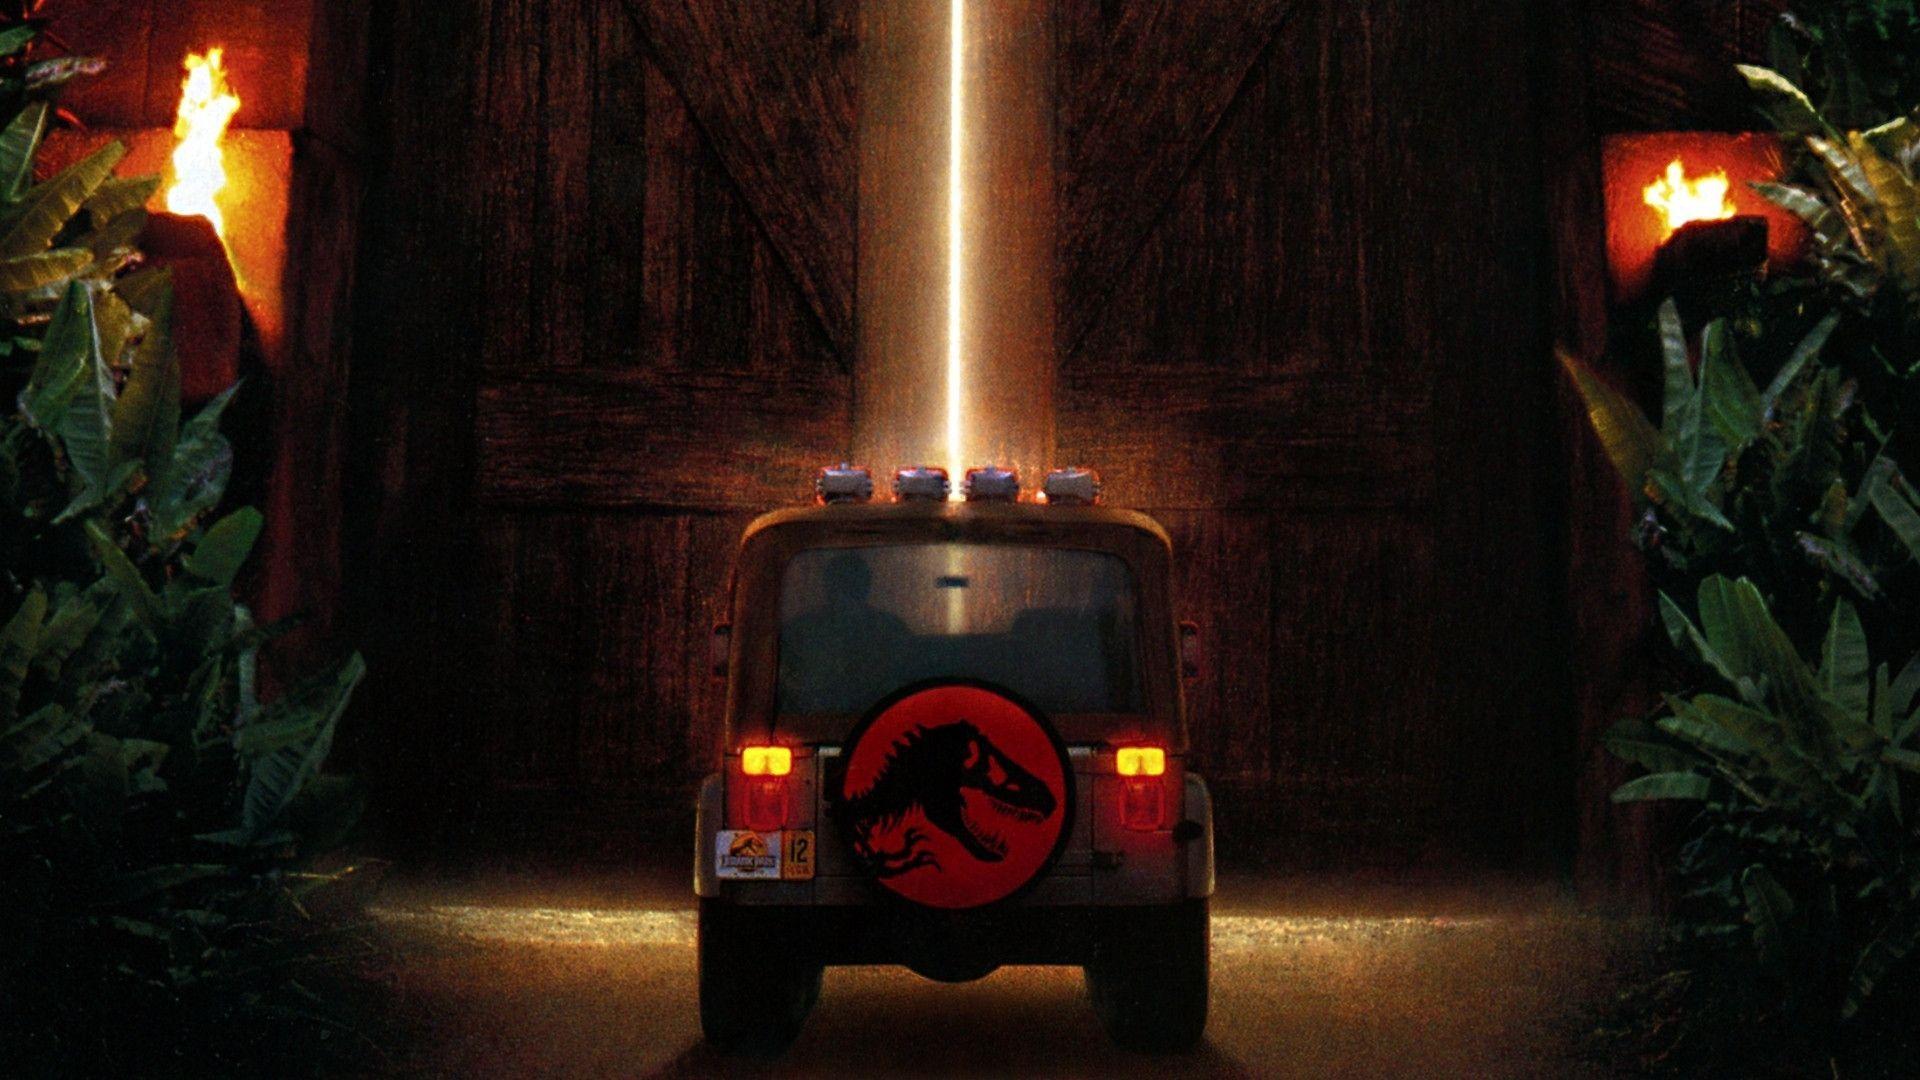 Jurassic Park wallpaper